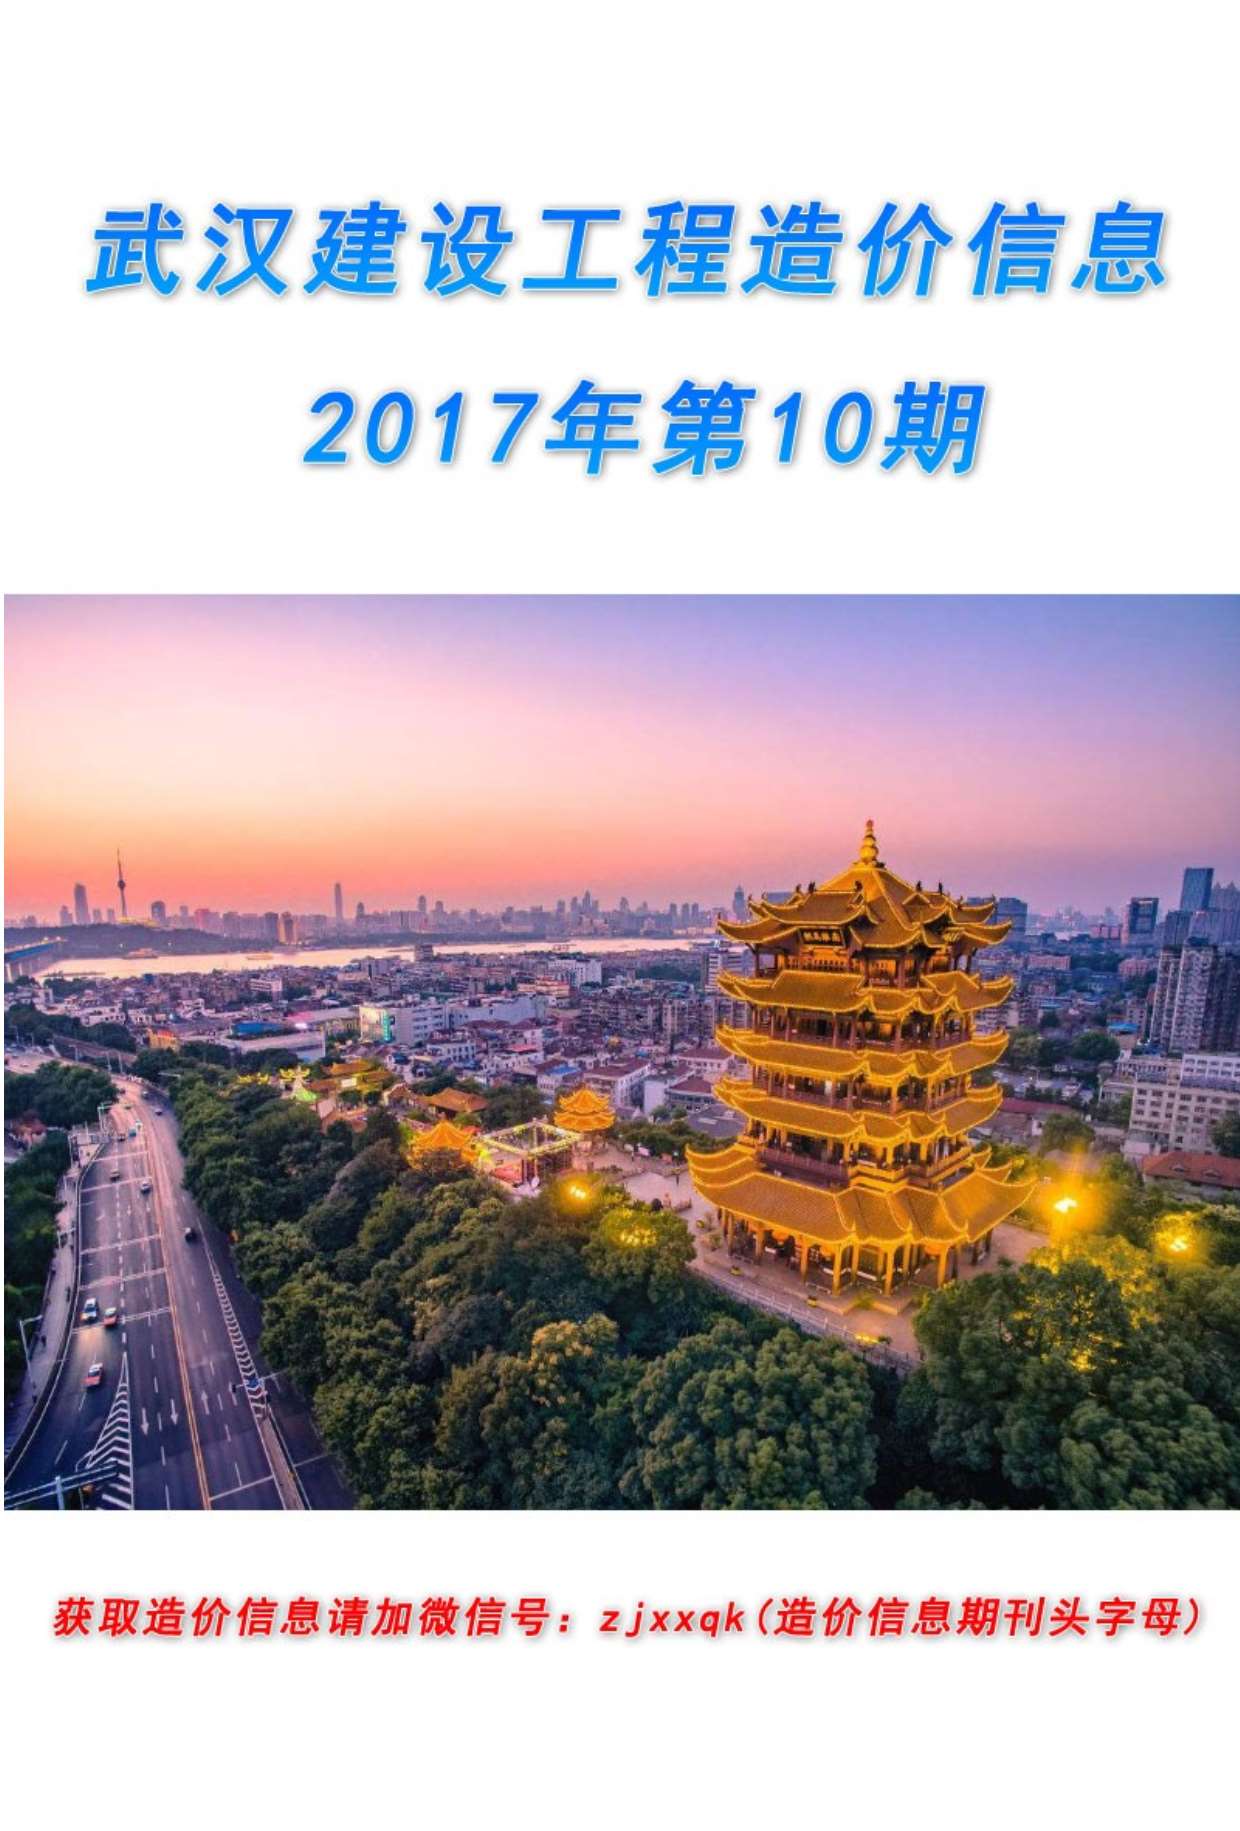 武汉市2017年10月材料价